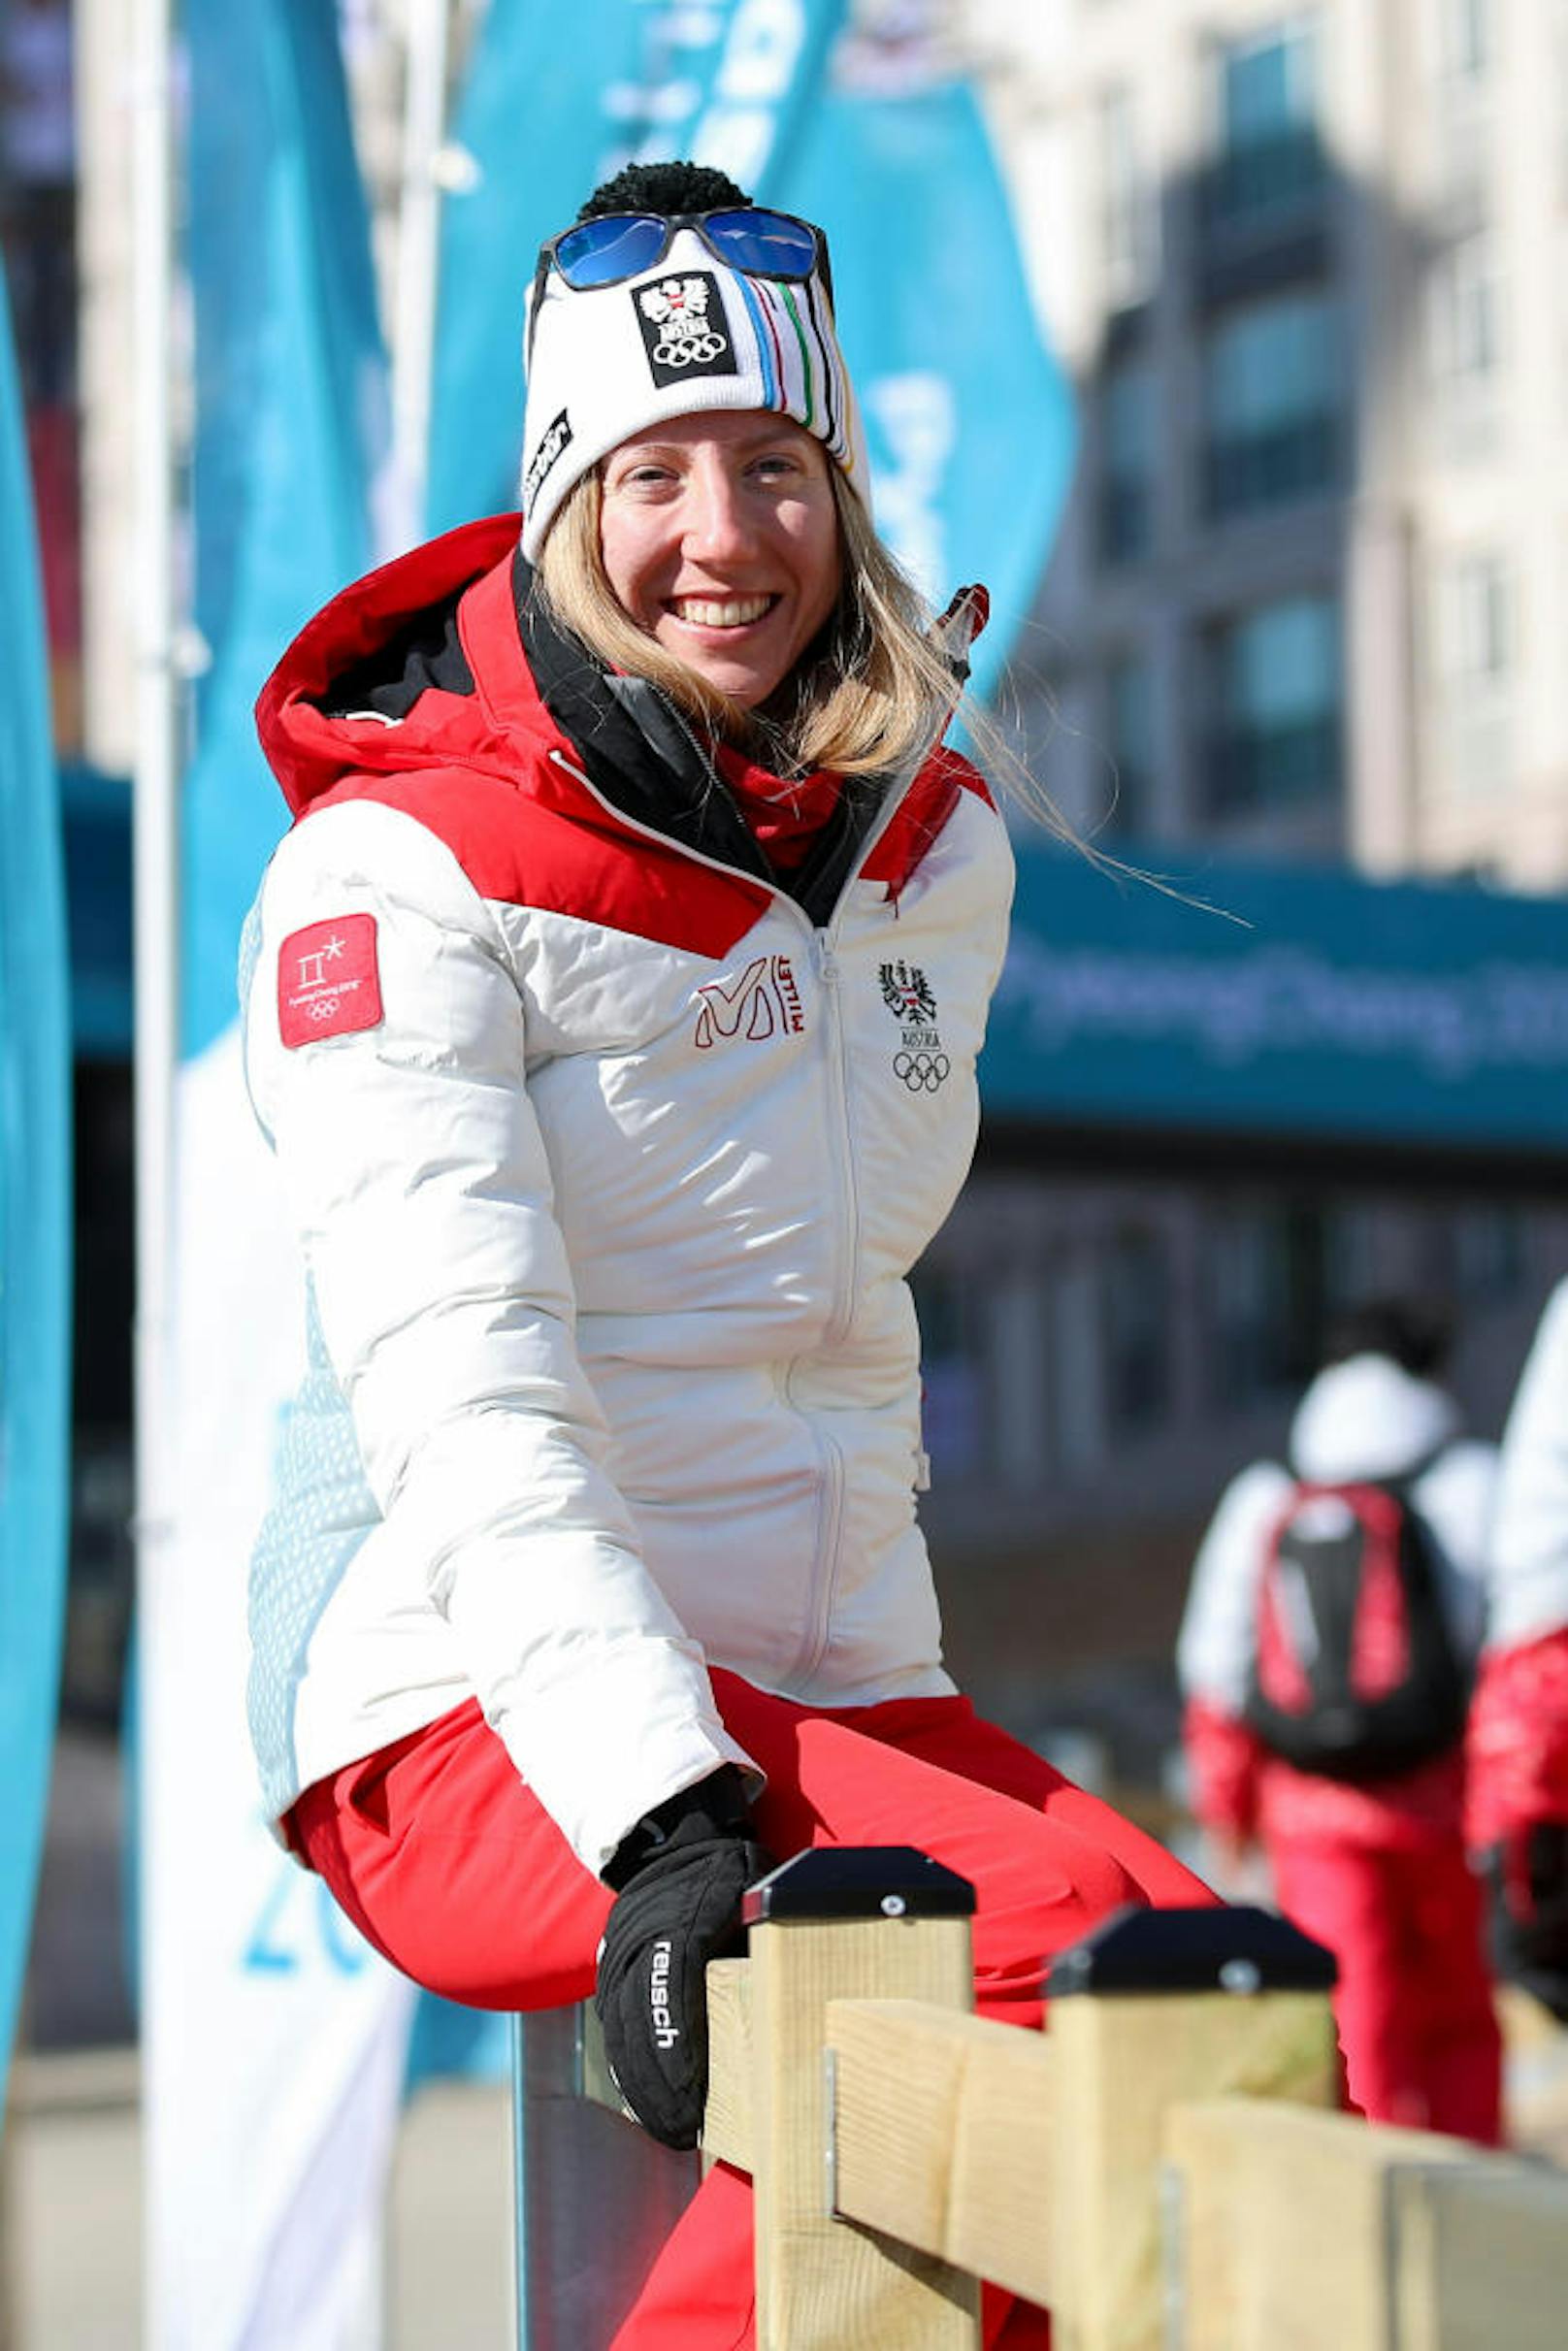 Langläuferin Teresa Stadlober ist in der Weltspitze angekommen. Die prestigeträchtige Tour de Ski beendete sie als Fünfte.